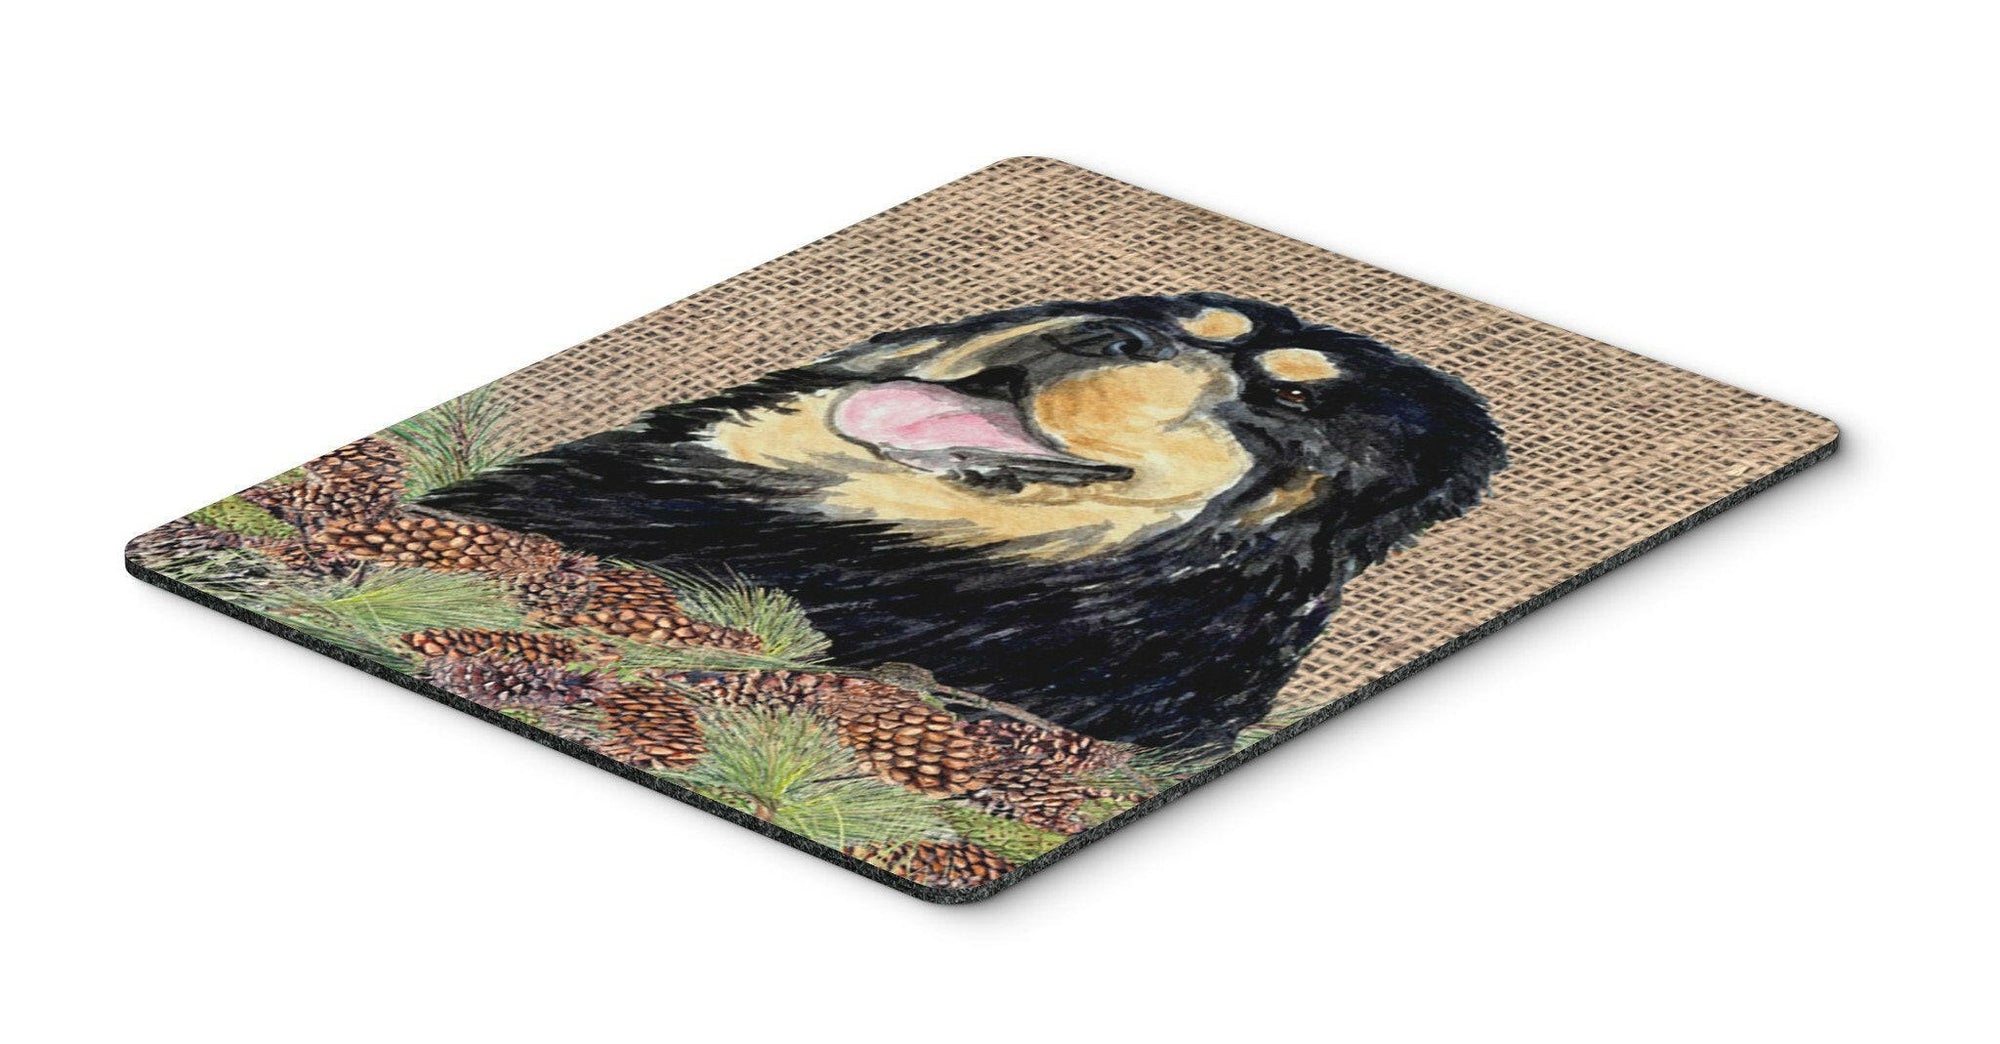 Tibetan Mastiff Mouse Pad, Hot Pad or Trivet by Caroline's Treasures